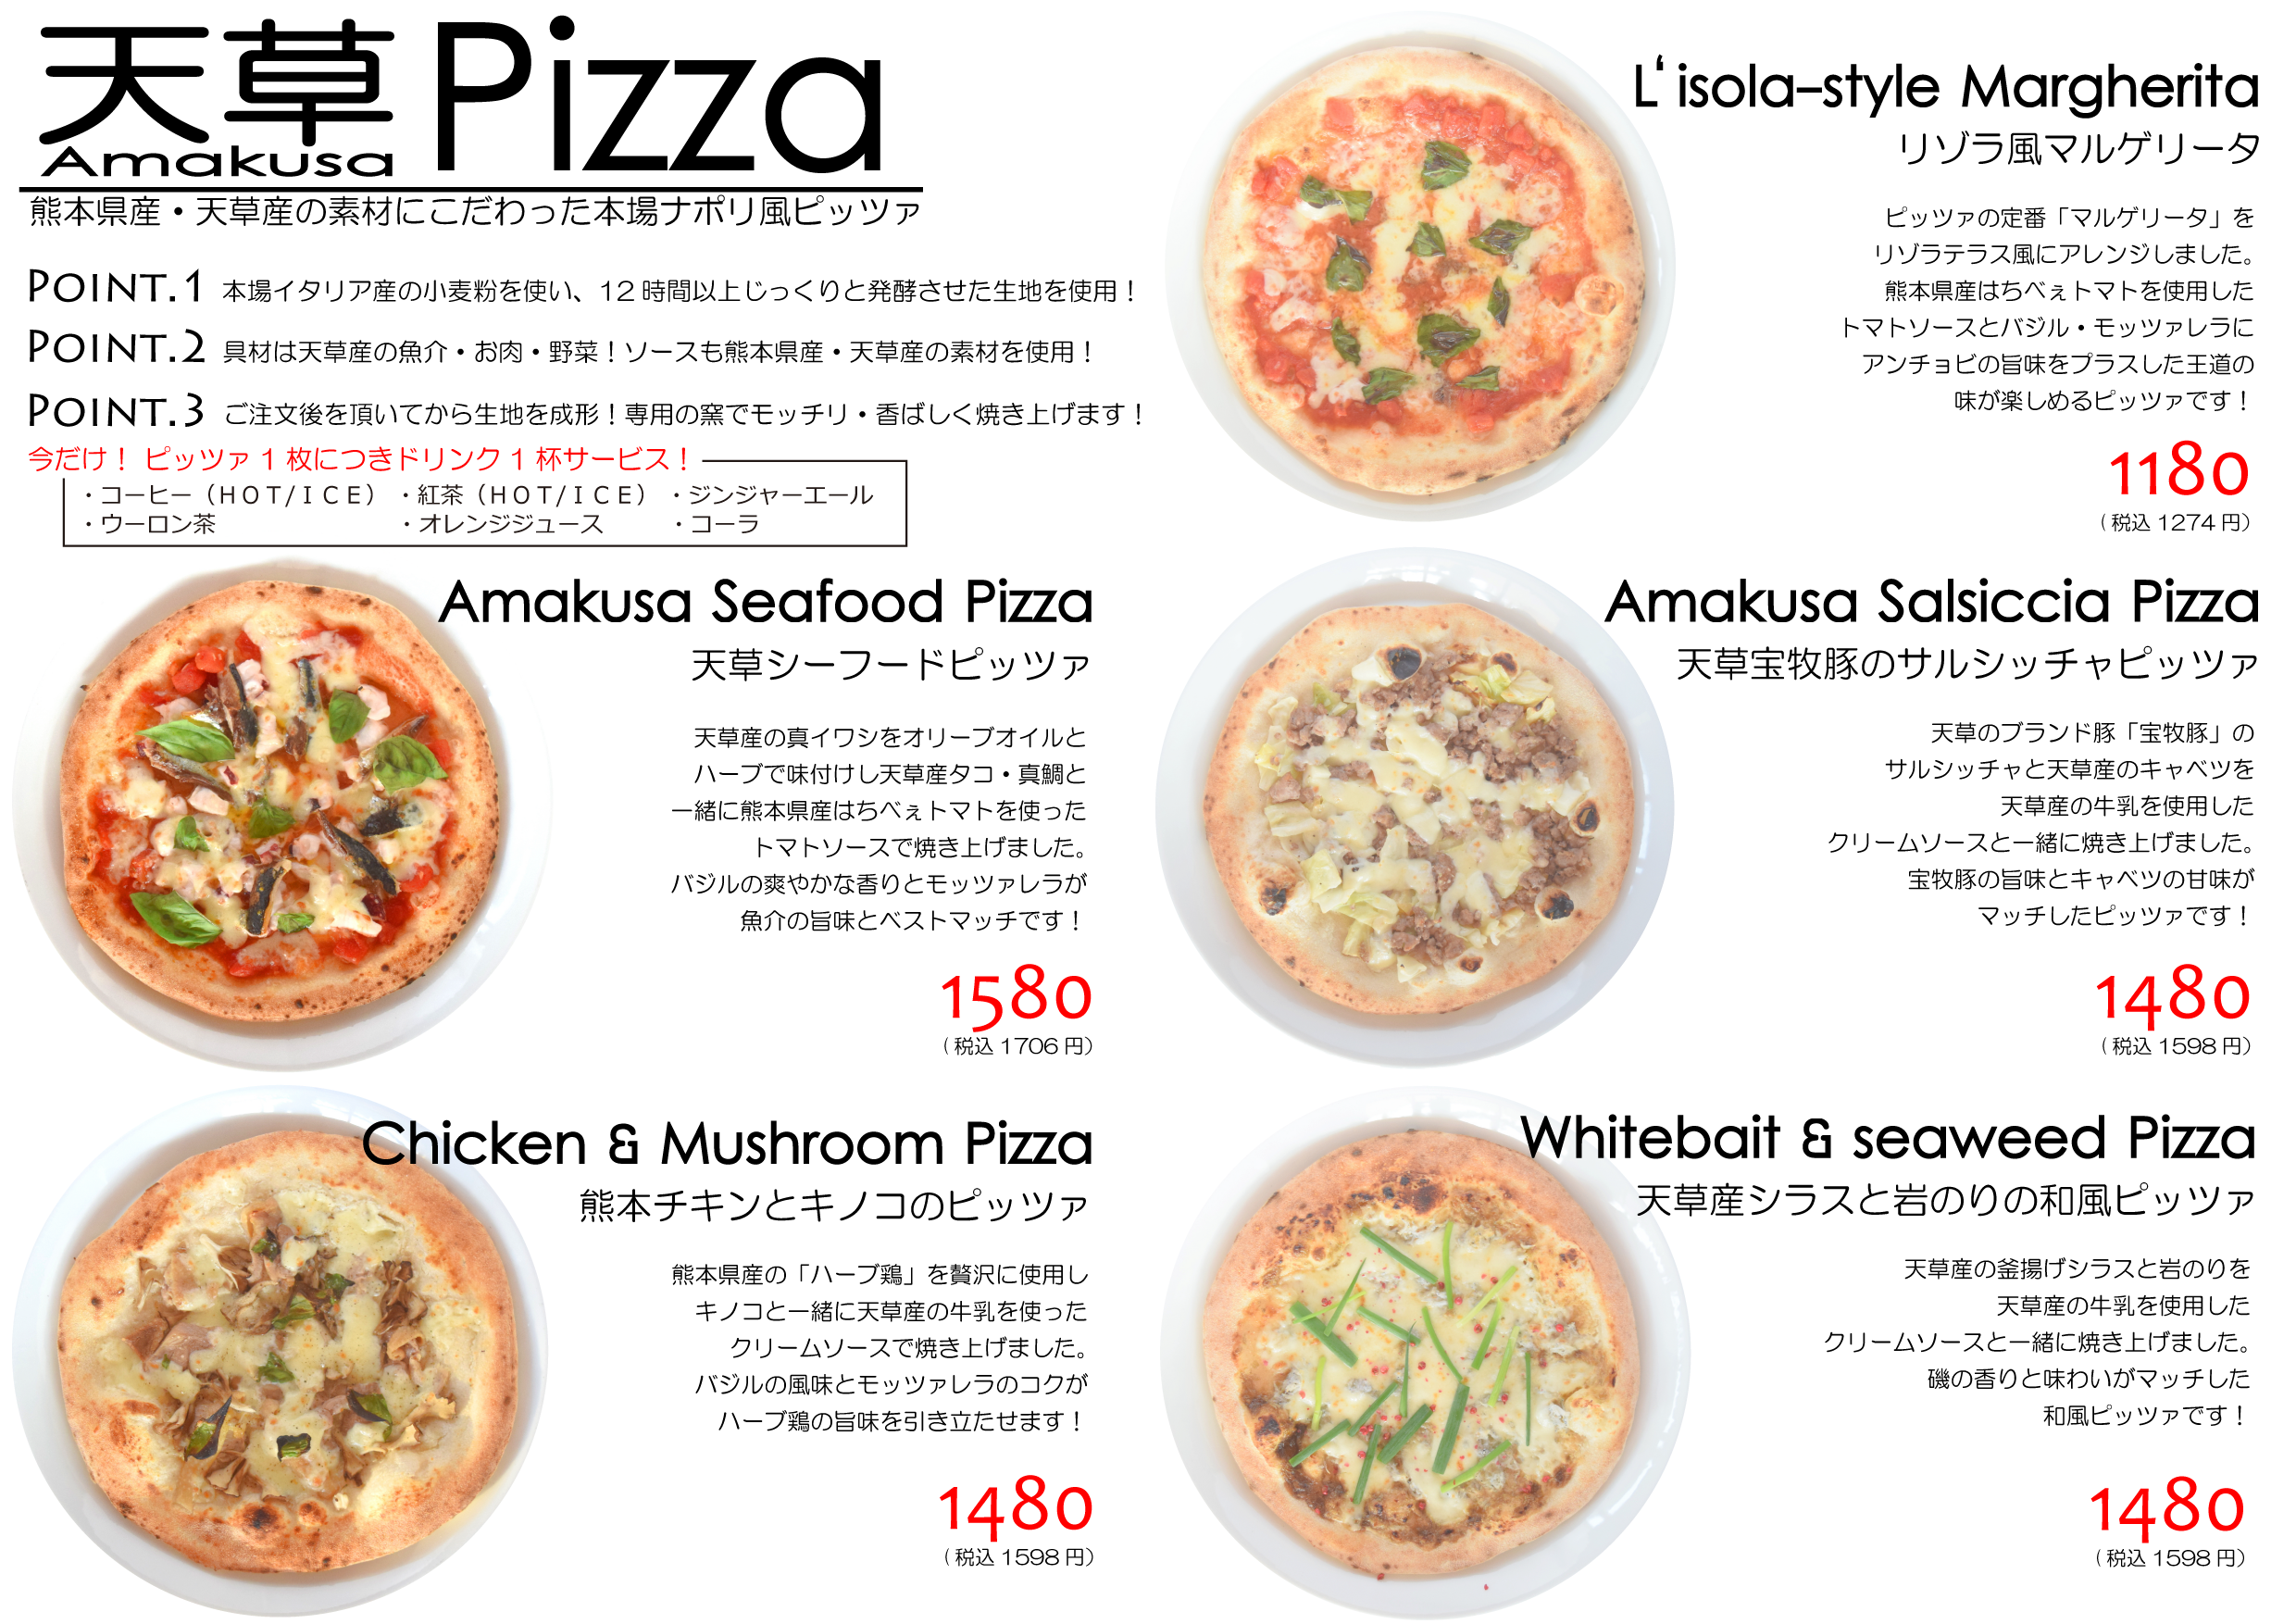 天草pizzaが5種類に増えました 天草のリゾートマーケット リゾラテラス天草 公式サイト